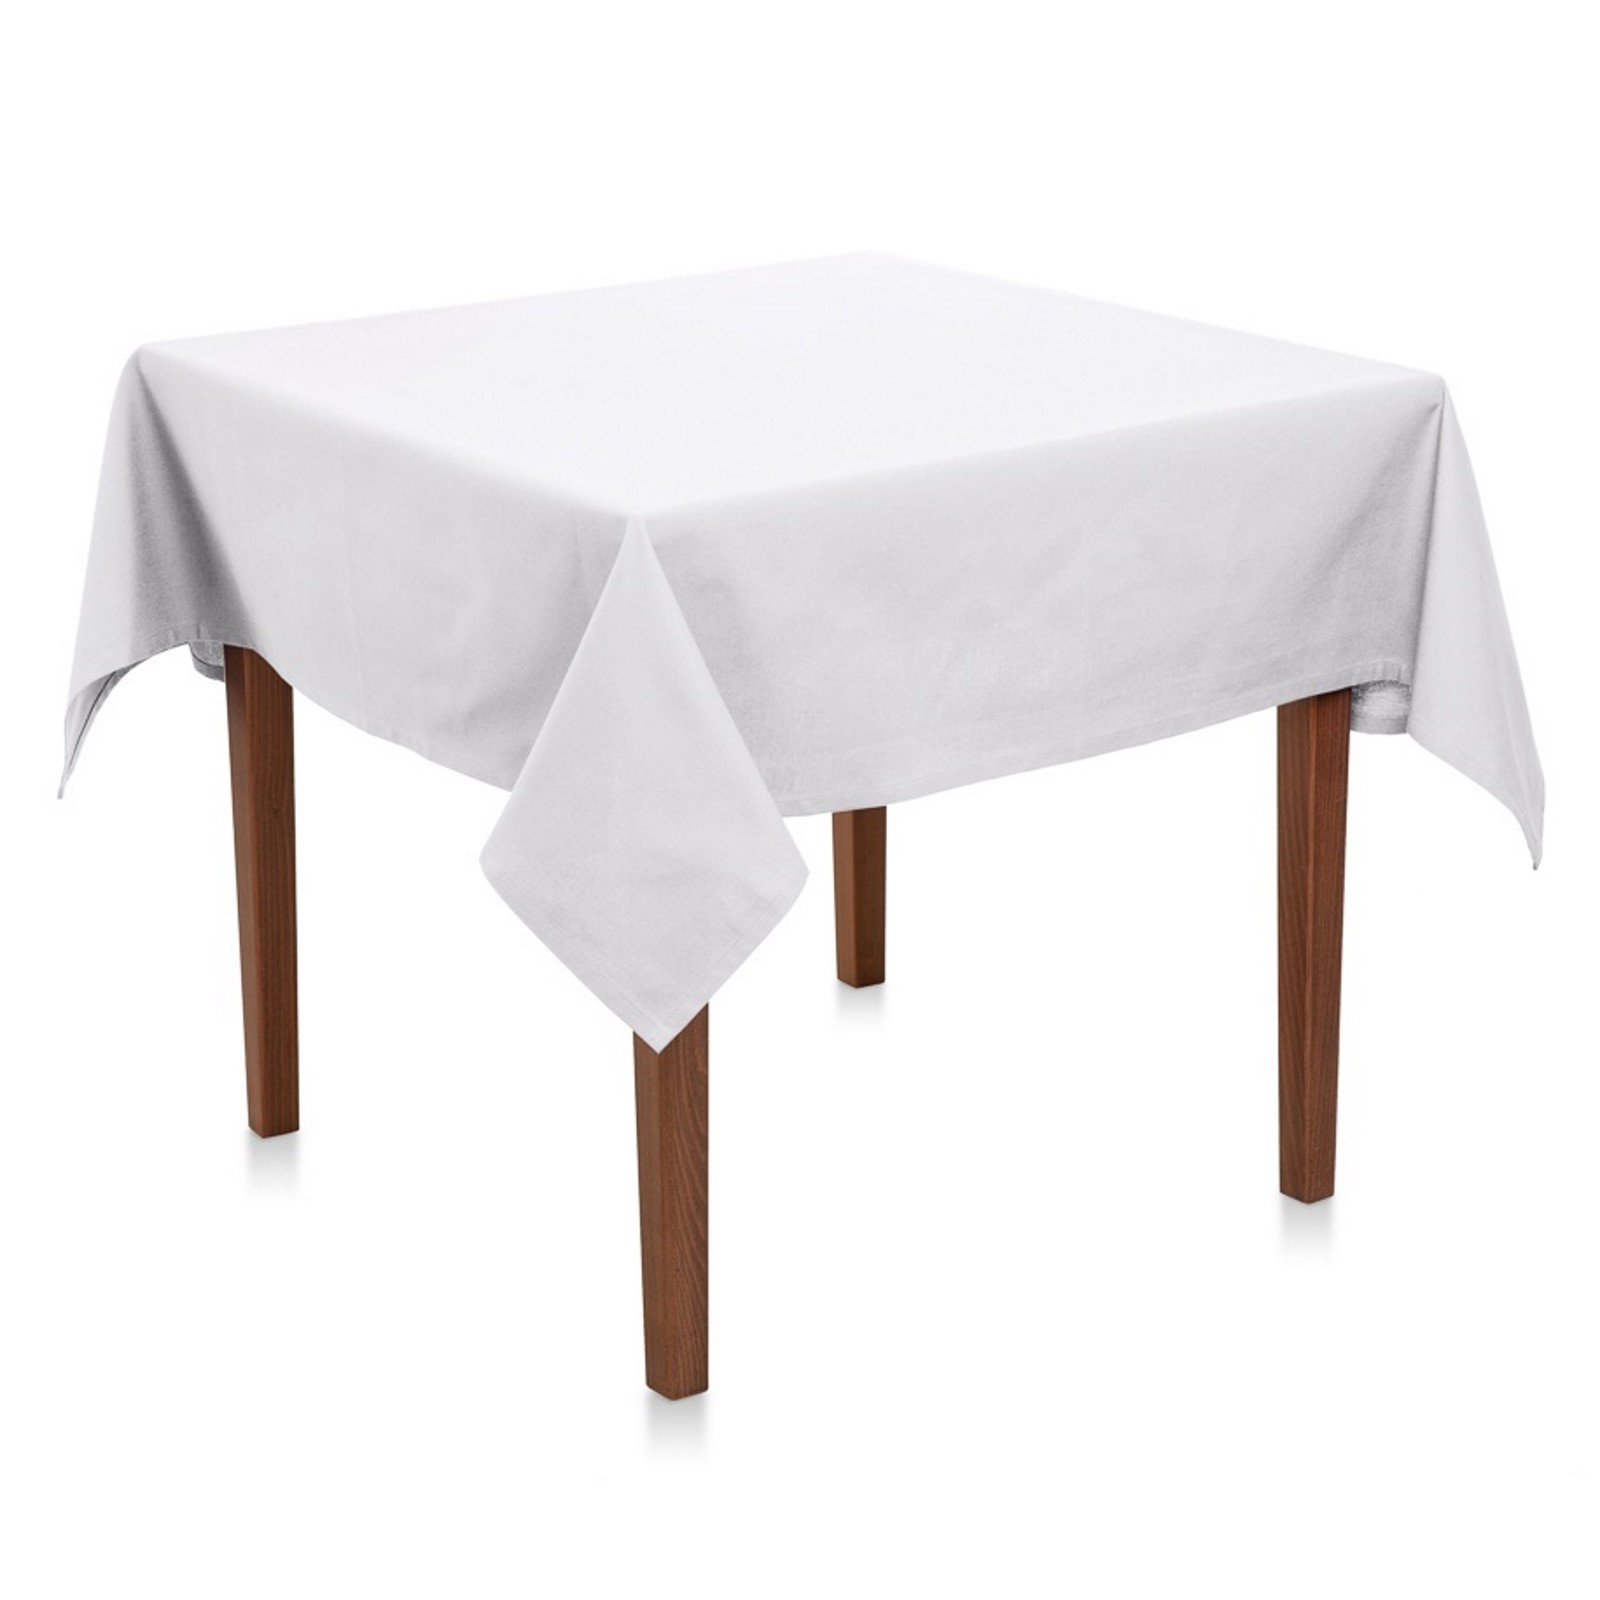 Tischdecke Uni Baumwolle Weiß-130x220 cm